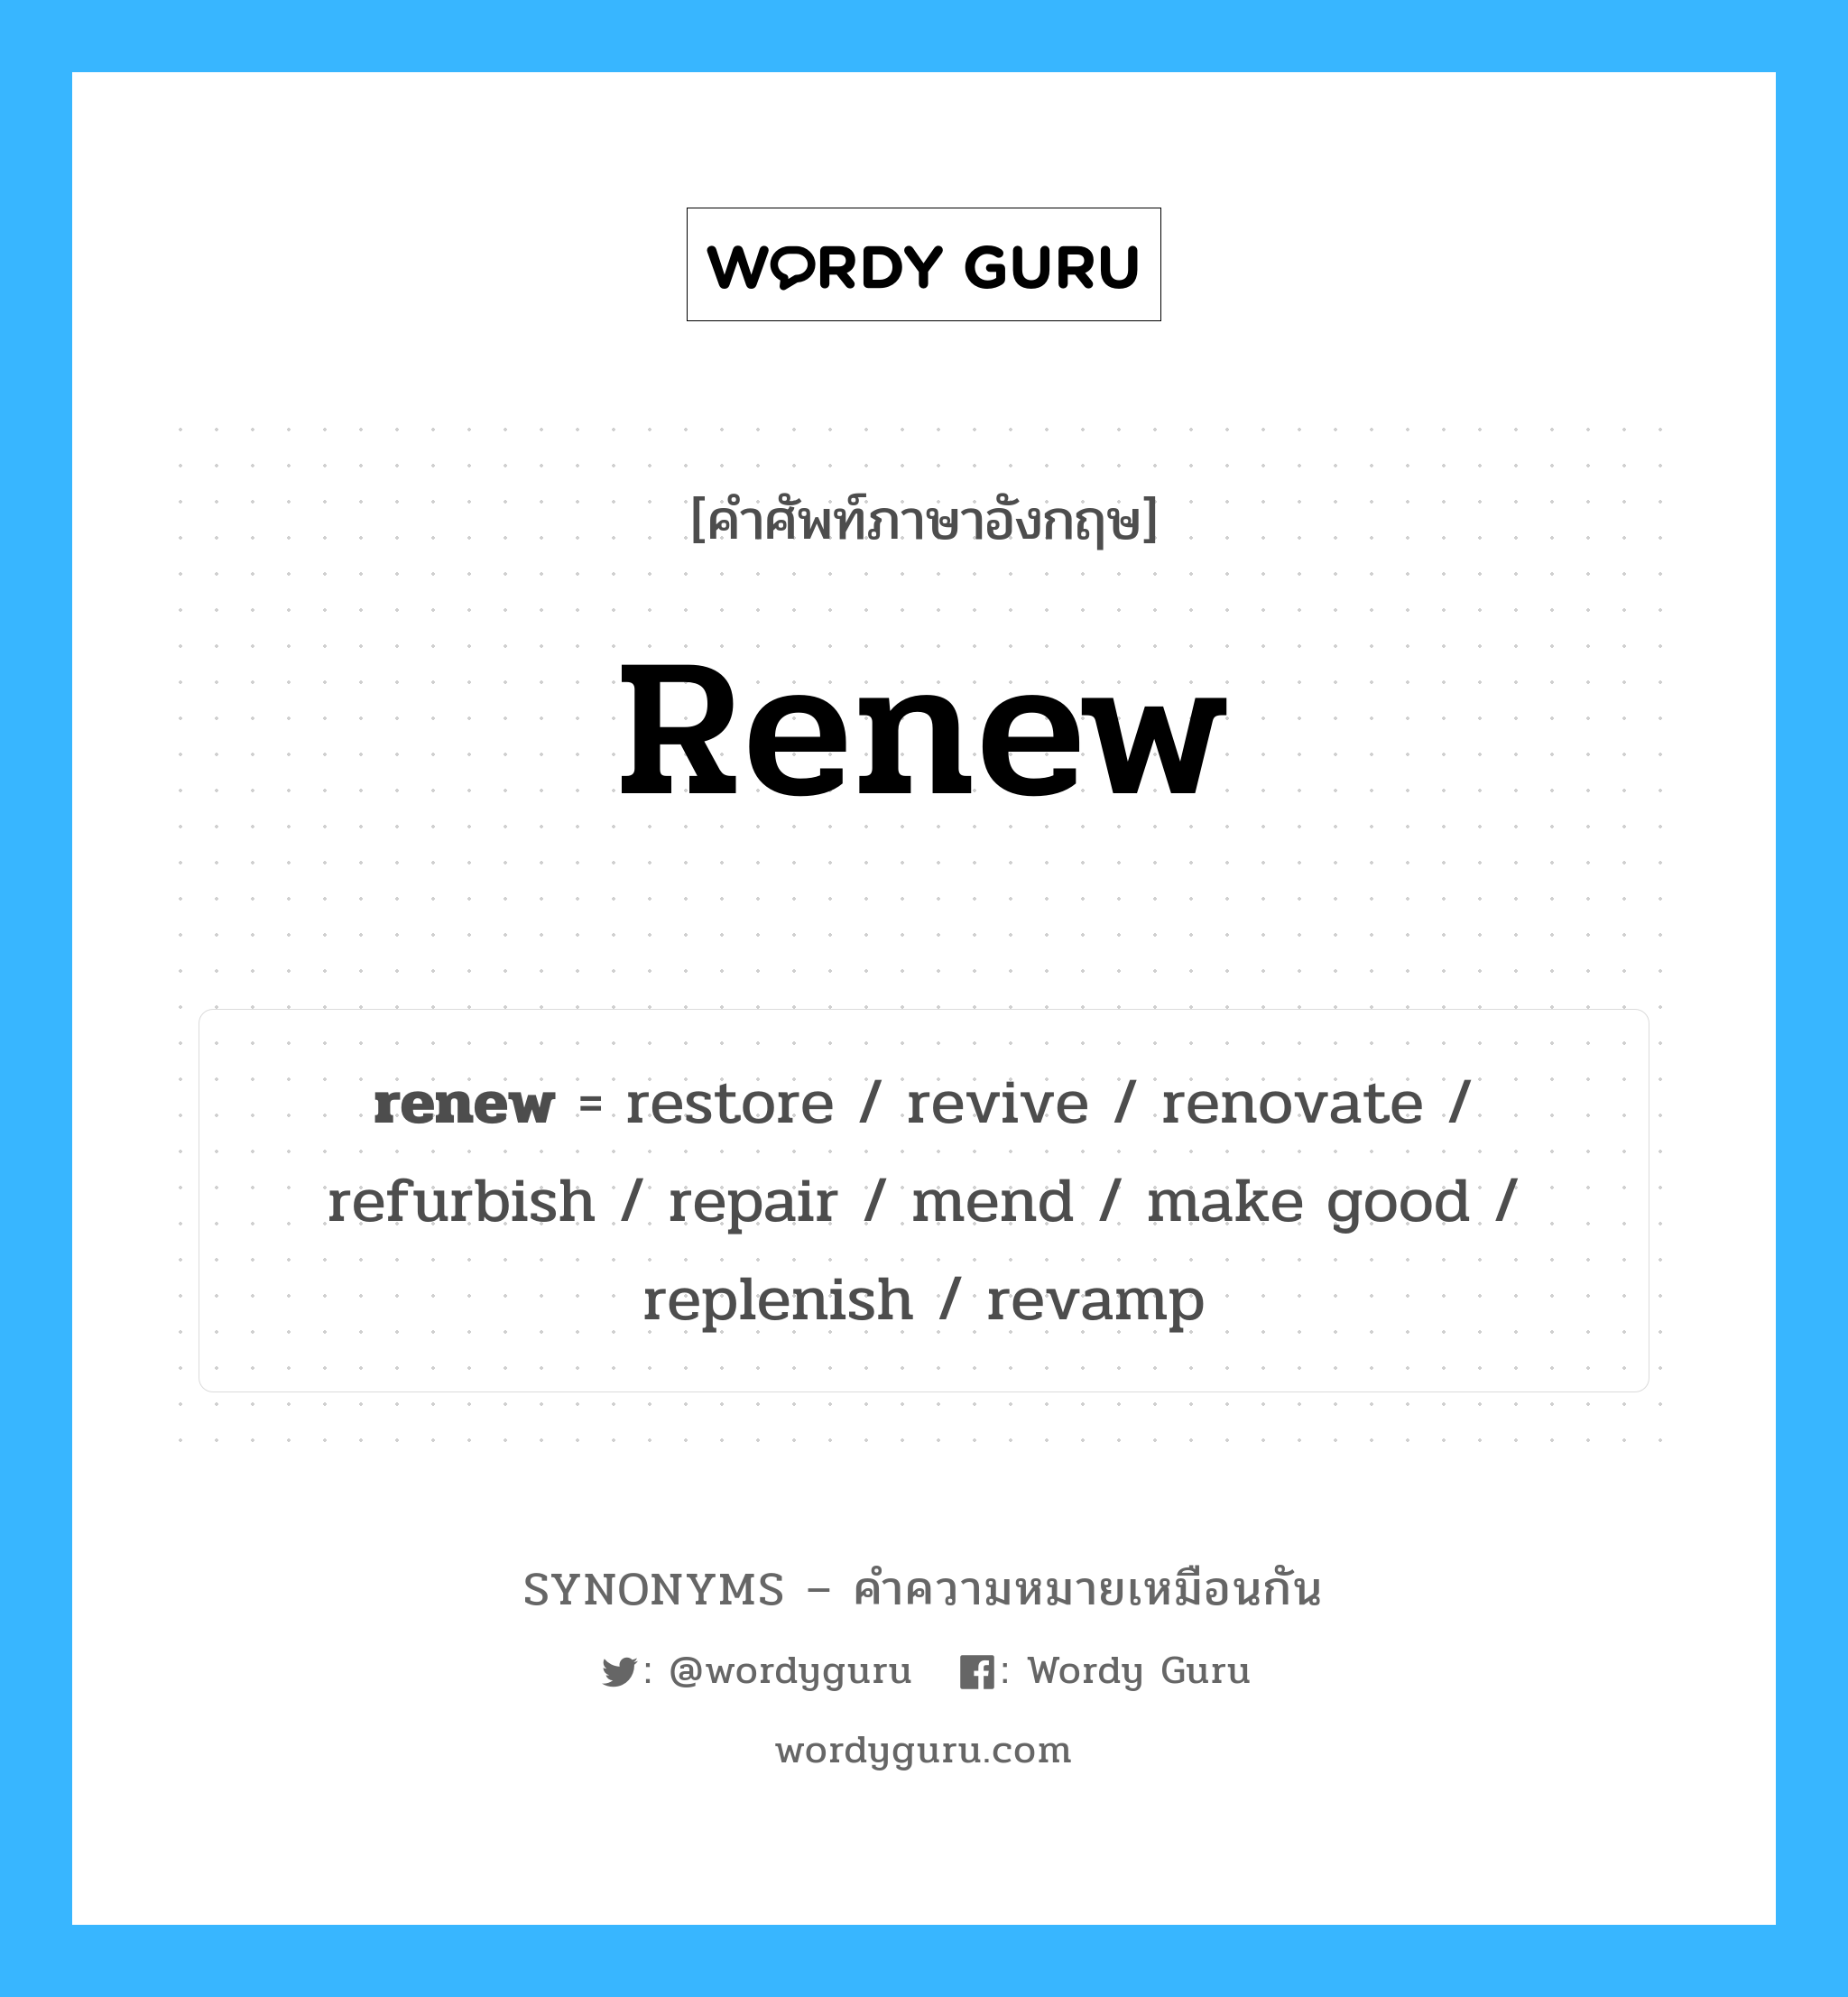 repair เป็นหนึ่งใน fix และมีคำอื่น ๆ อีกดังนี้, คำศัพท์ภาษาอังกฤษ repair ความหมายคล้ายกันกับ renew แปลว่า ซ่อมแซม หมวด renew